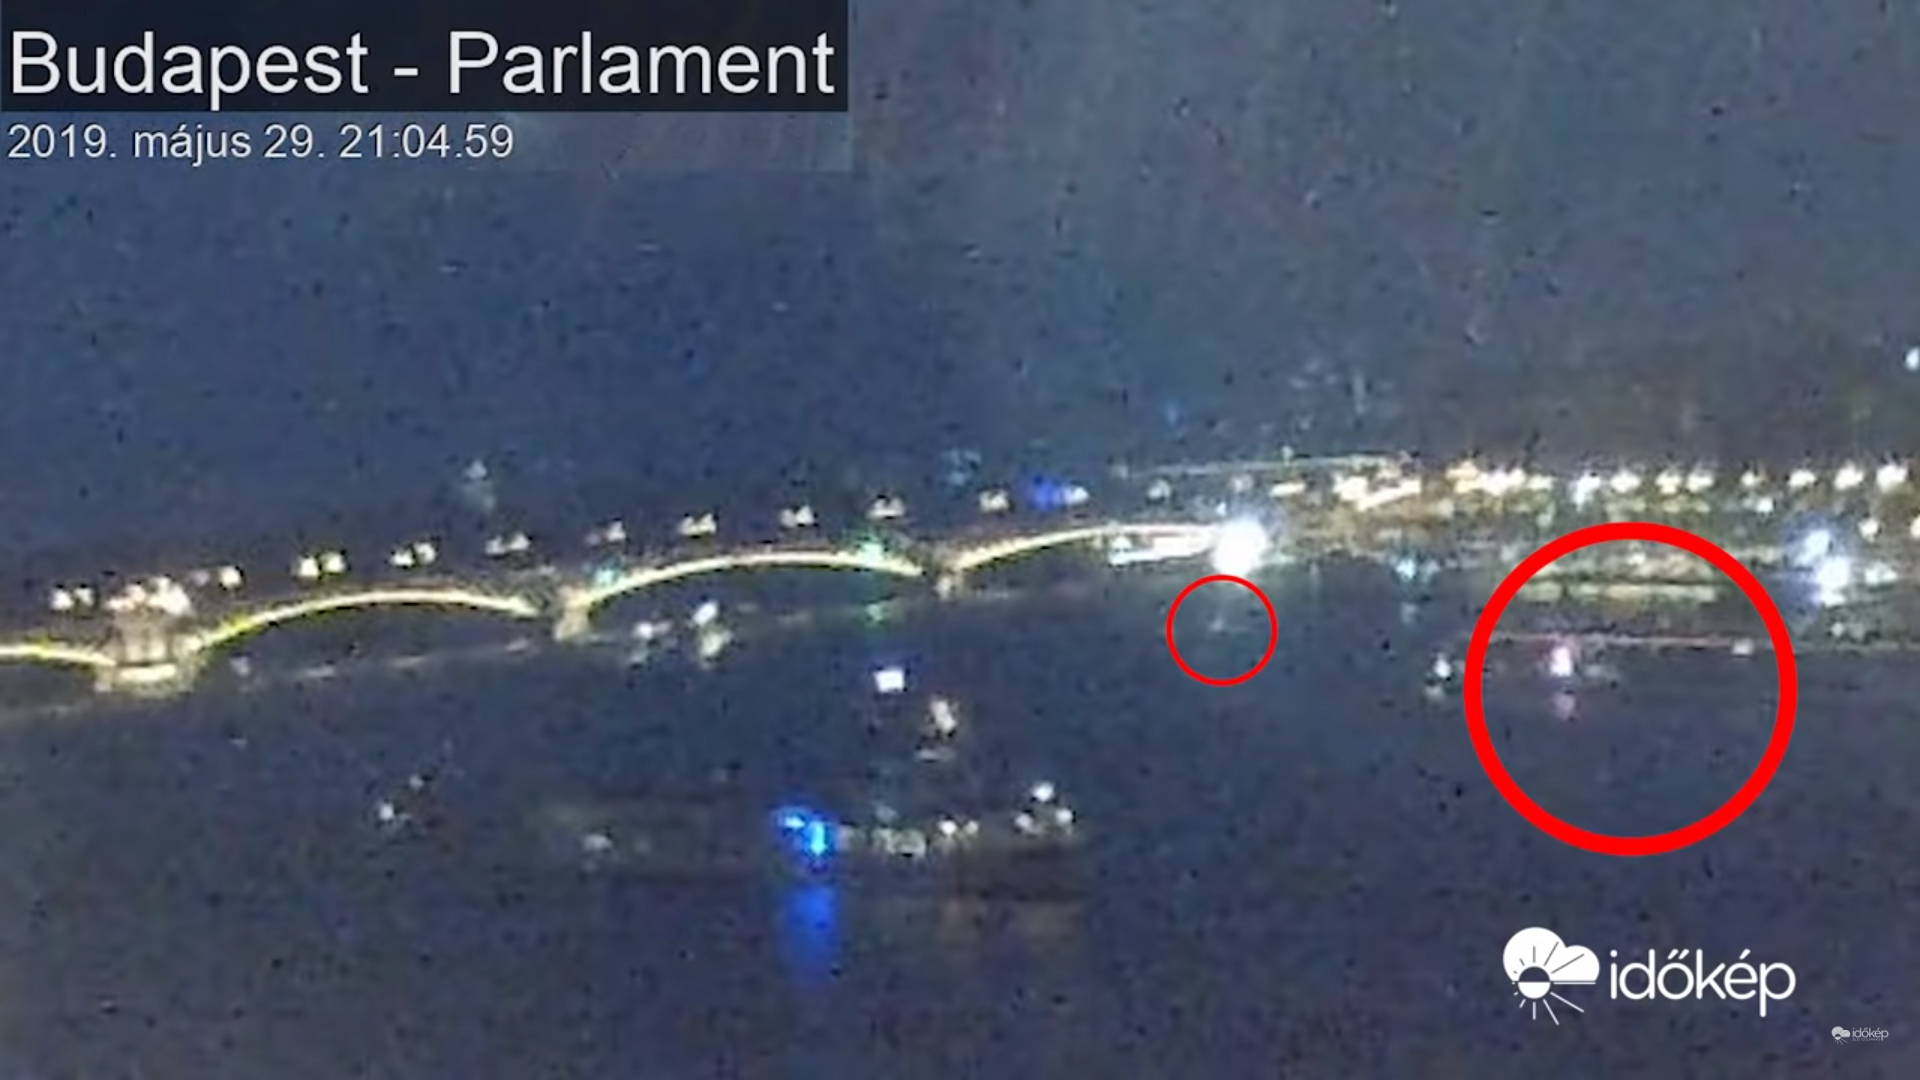 Incidente di collisione della nave del Danubio a budapest in Ungheria